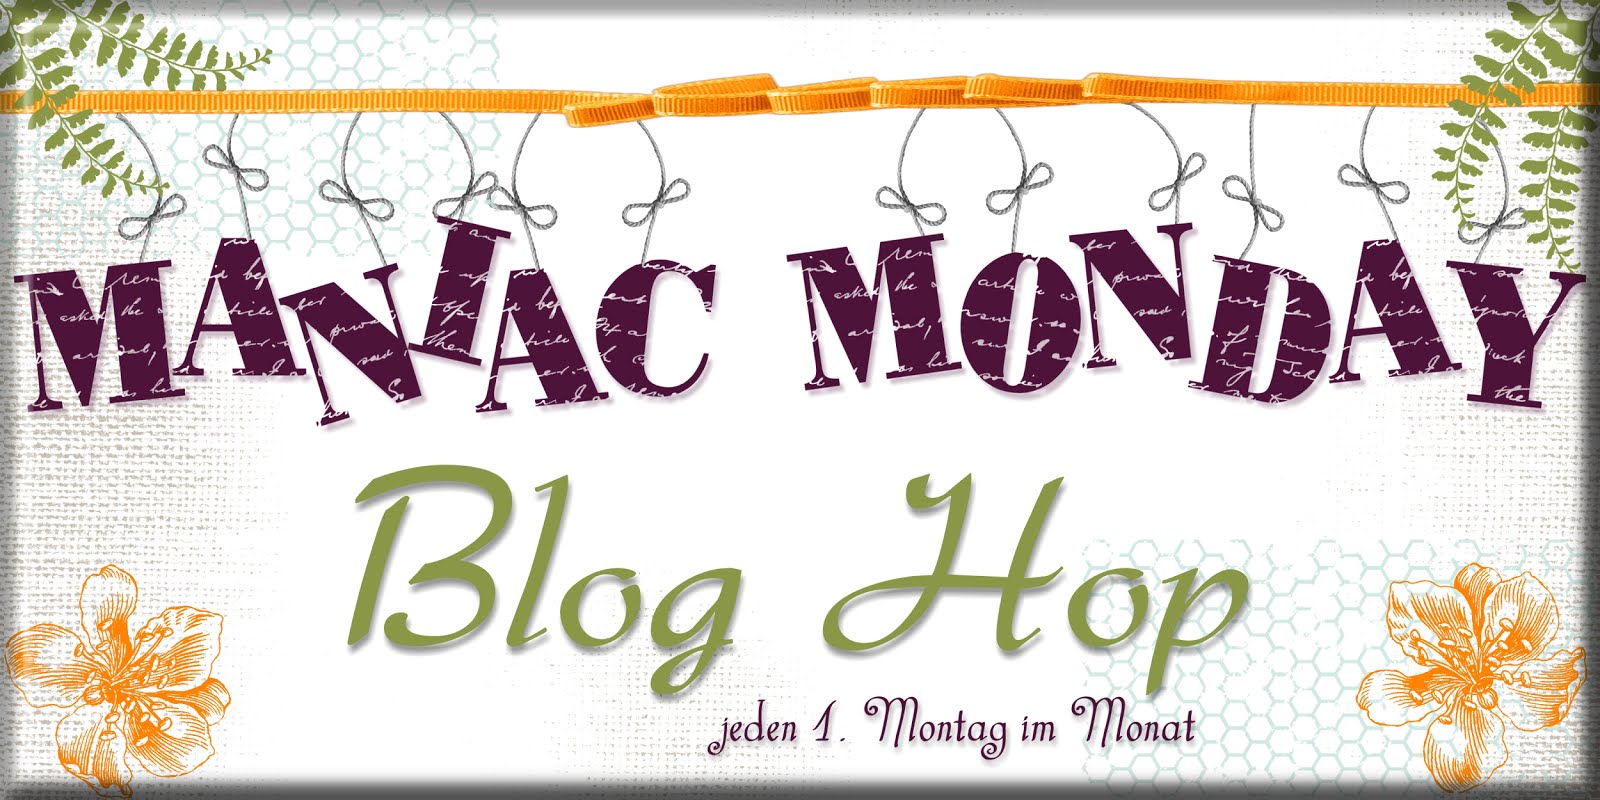 Neuer Bloghop an jedem 1. Montag